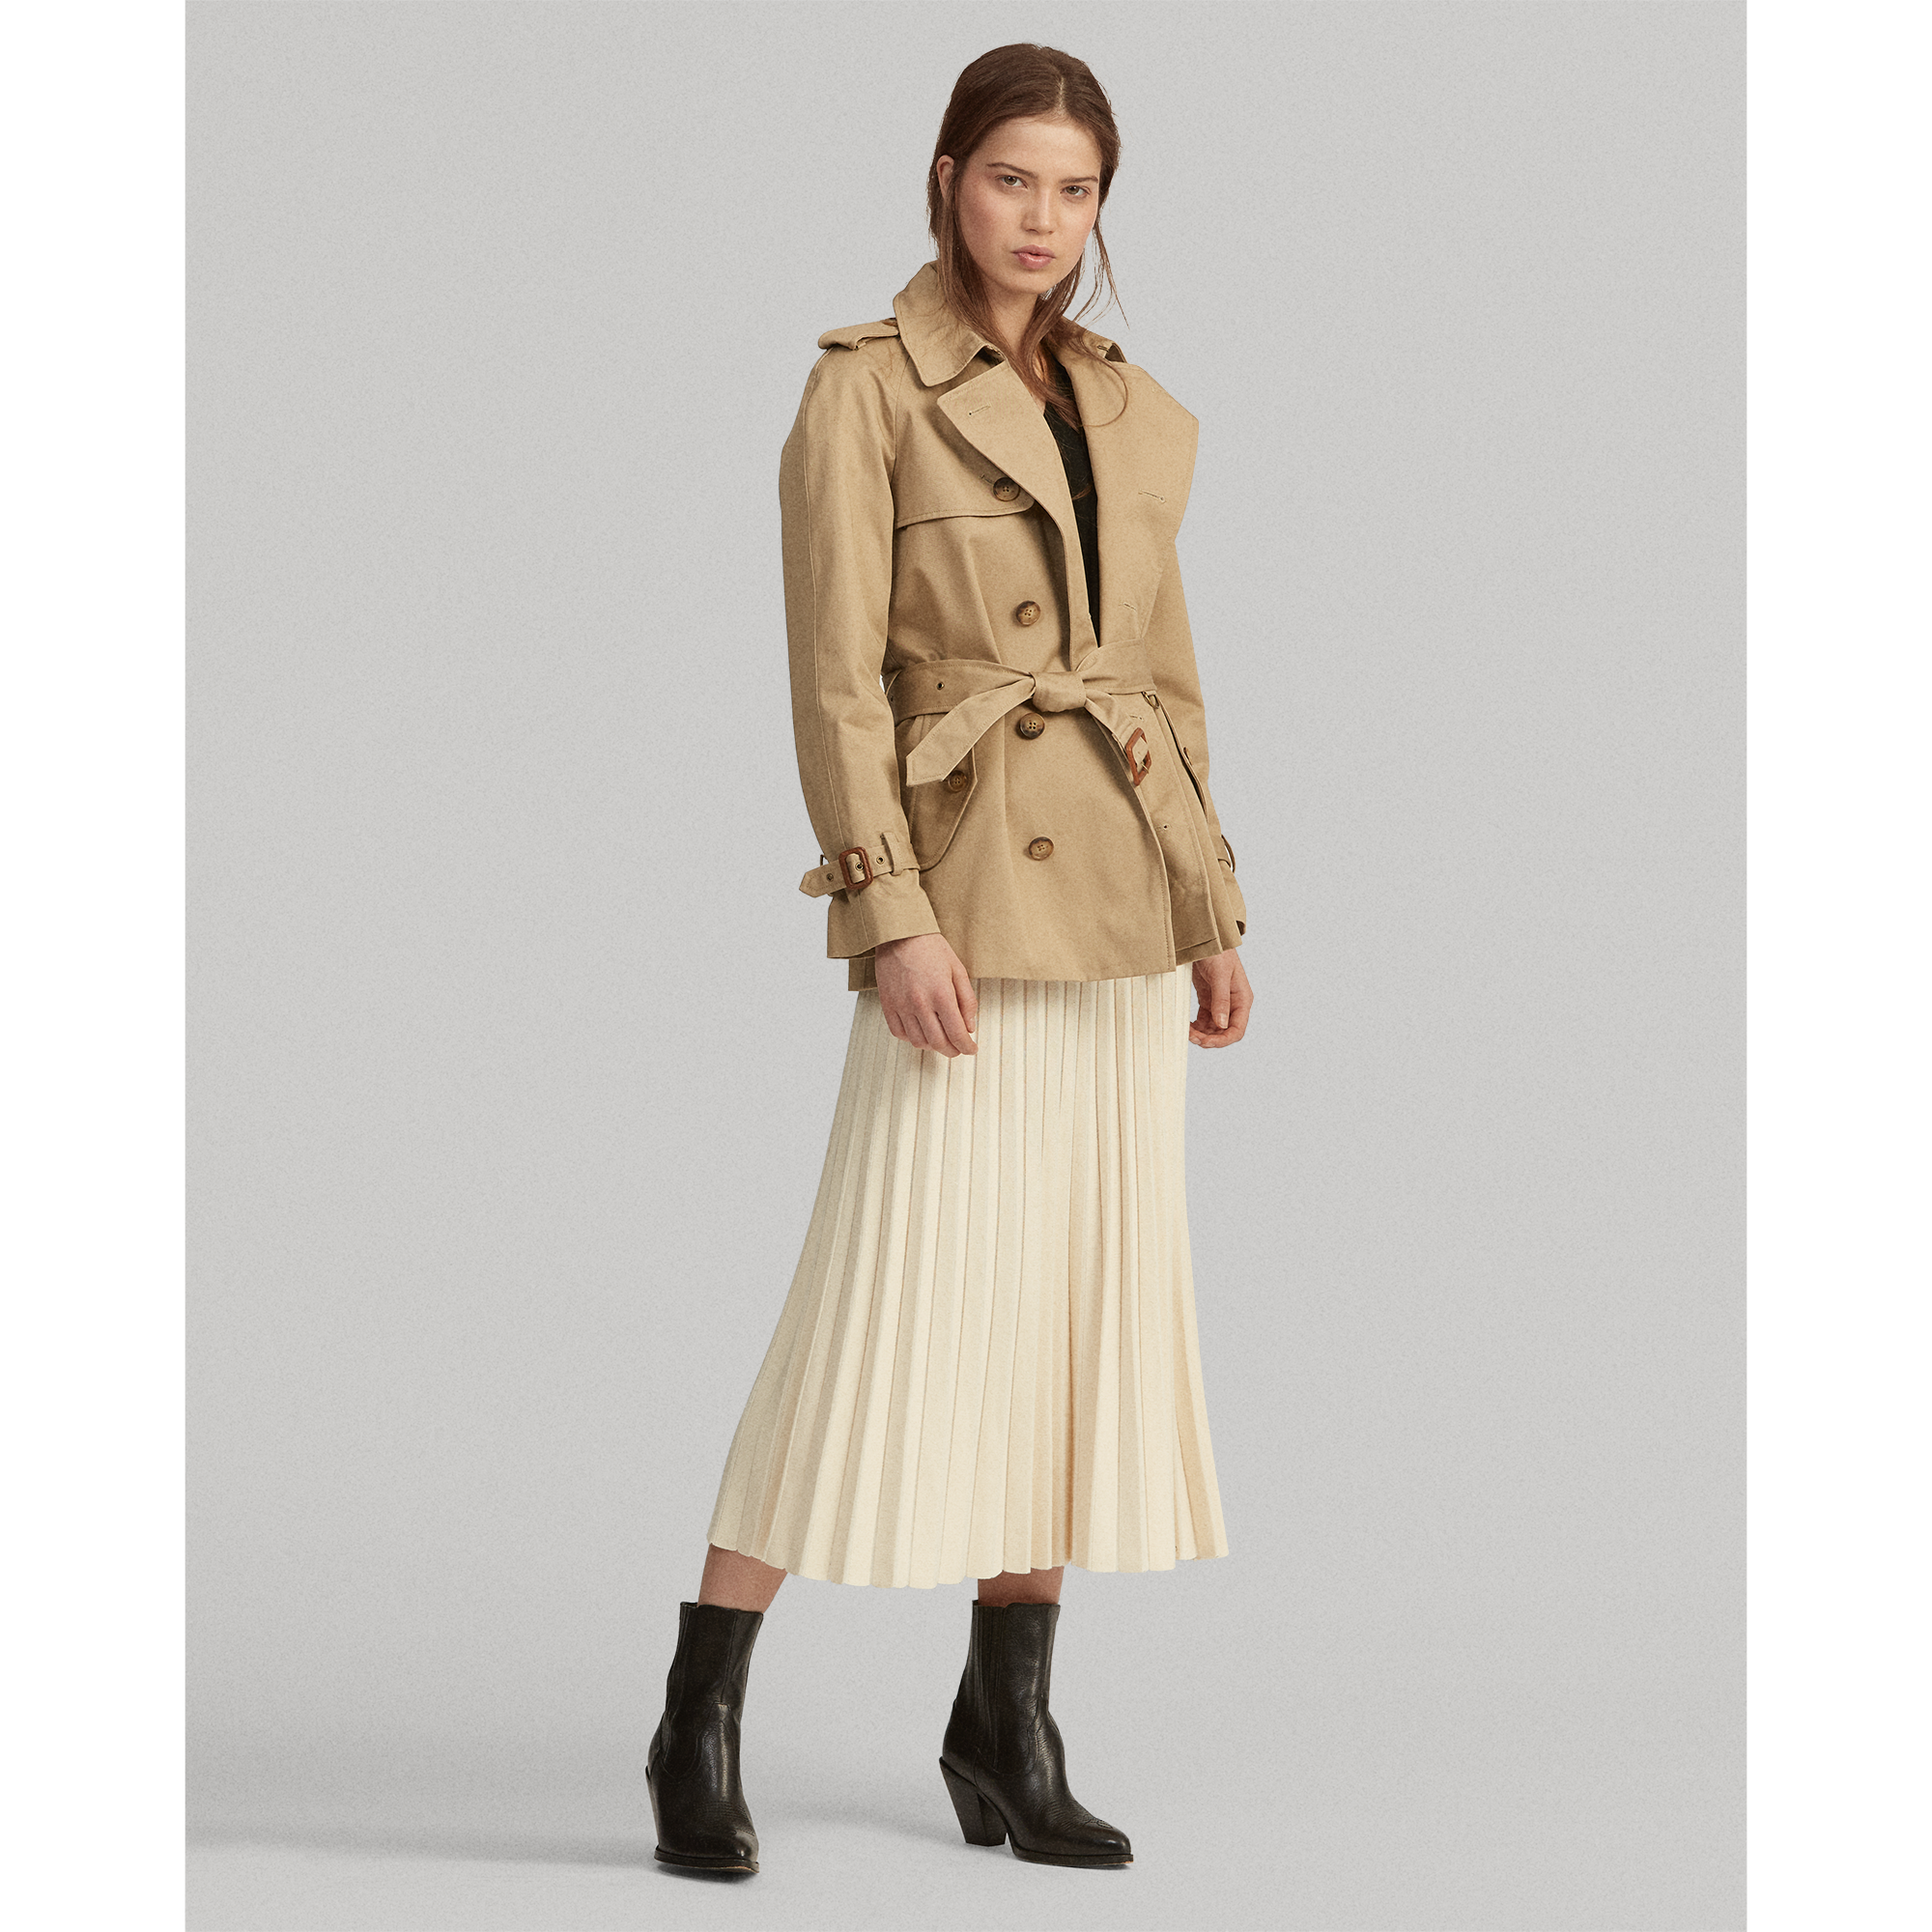 Ralph Lauren Pleated Merino Wool Midi Skirt. 1